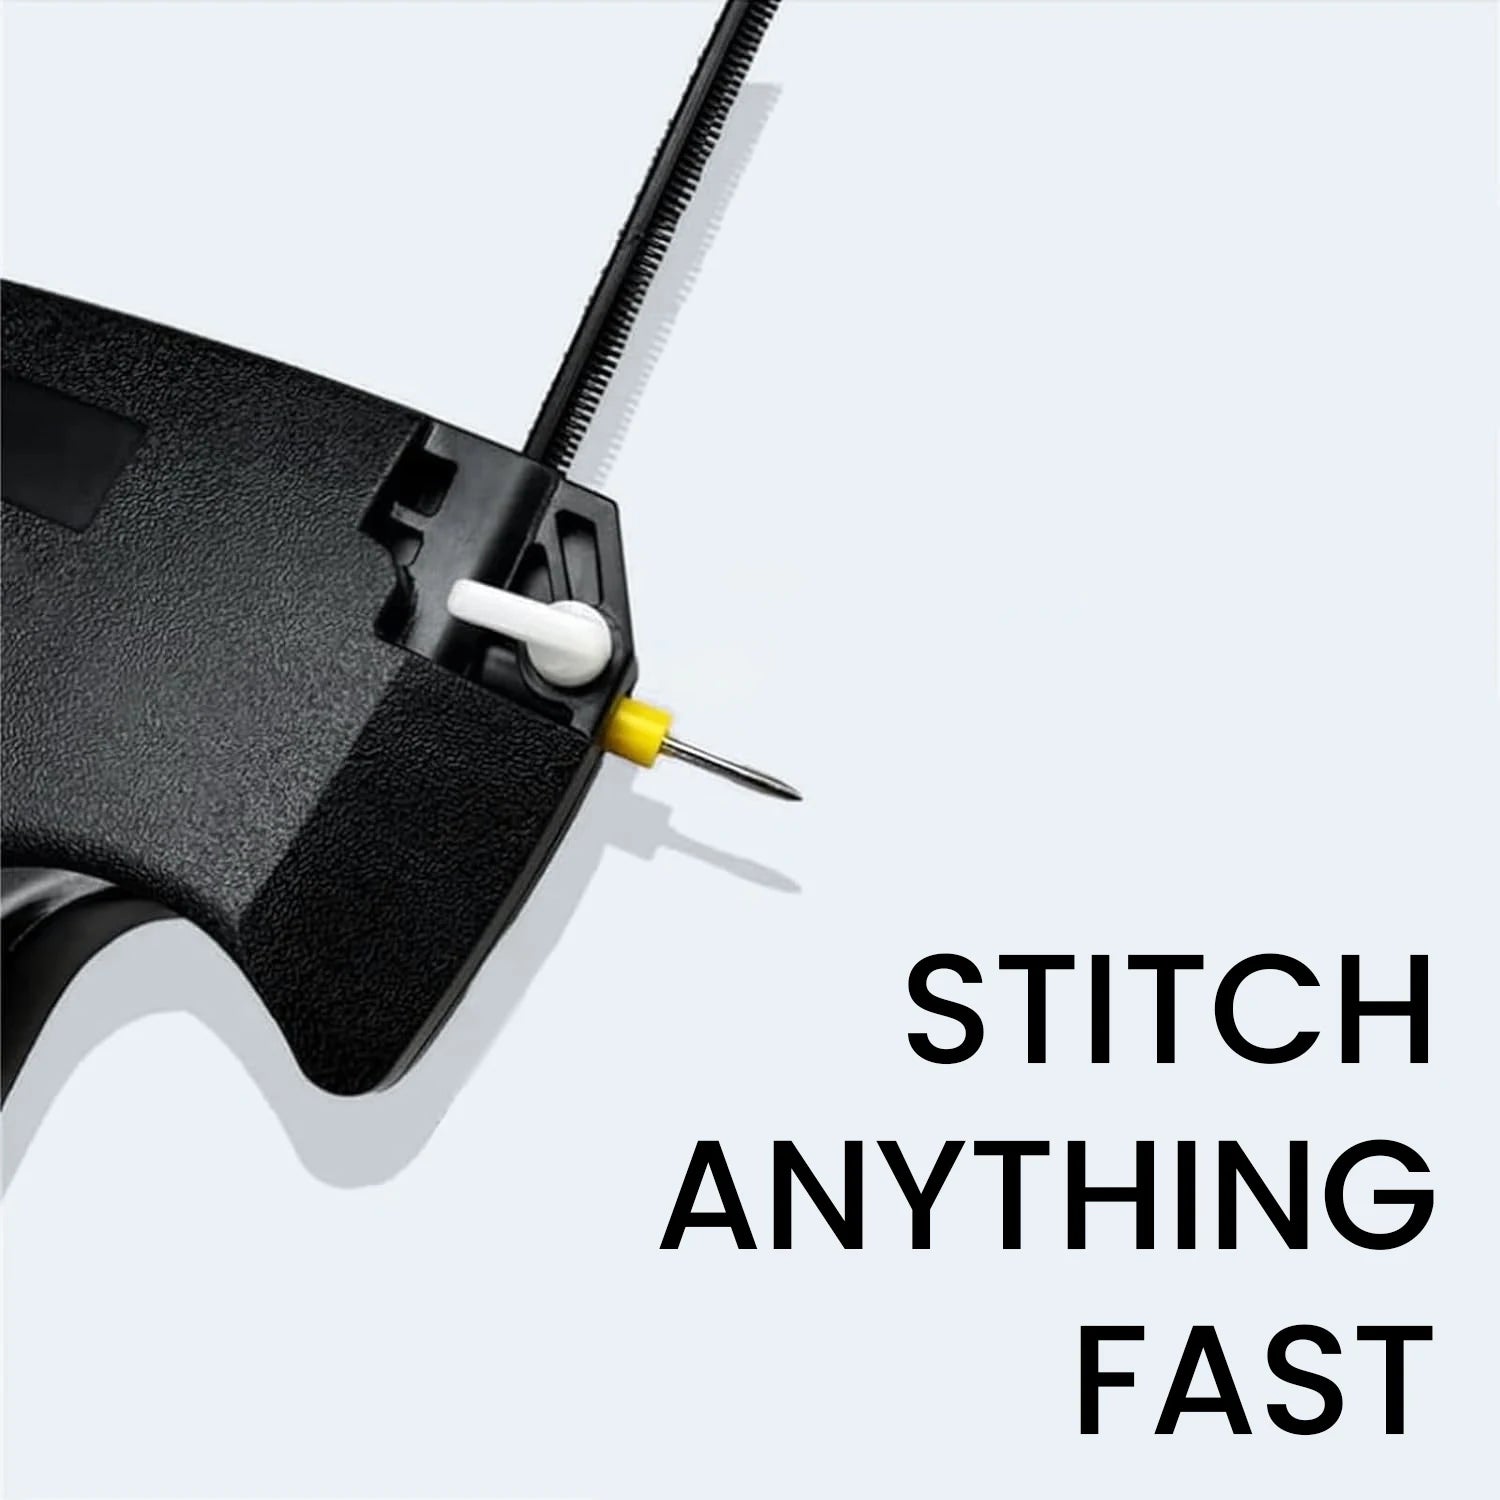 Instant Stitch Sewing Gun